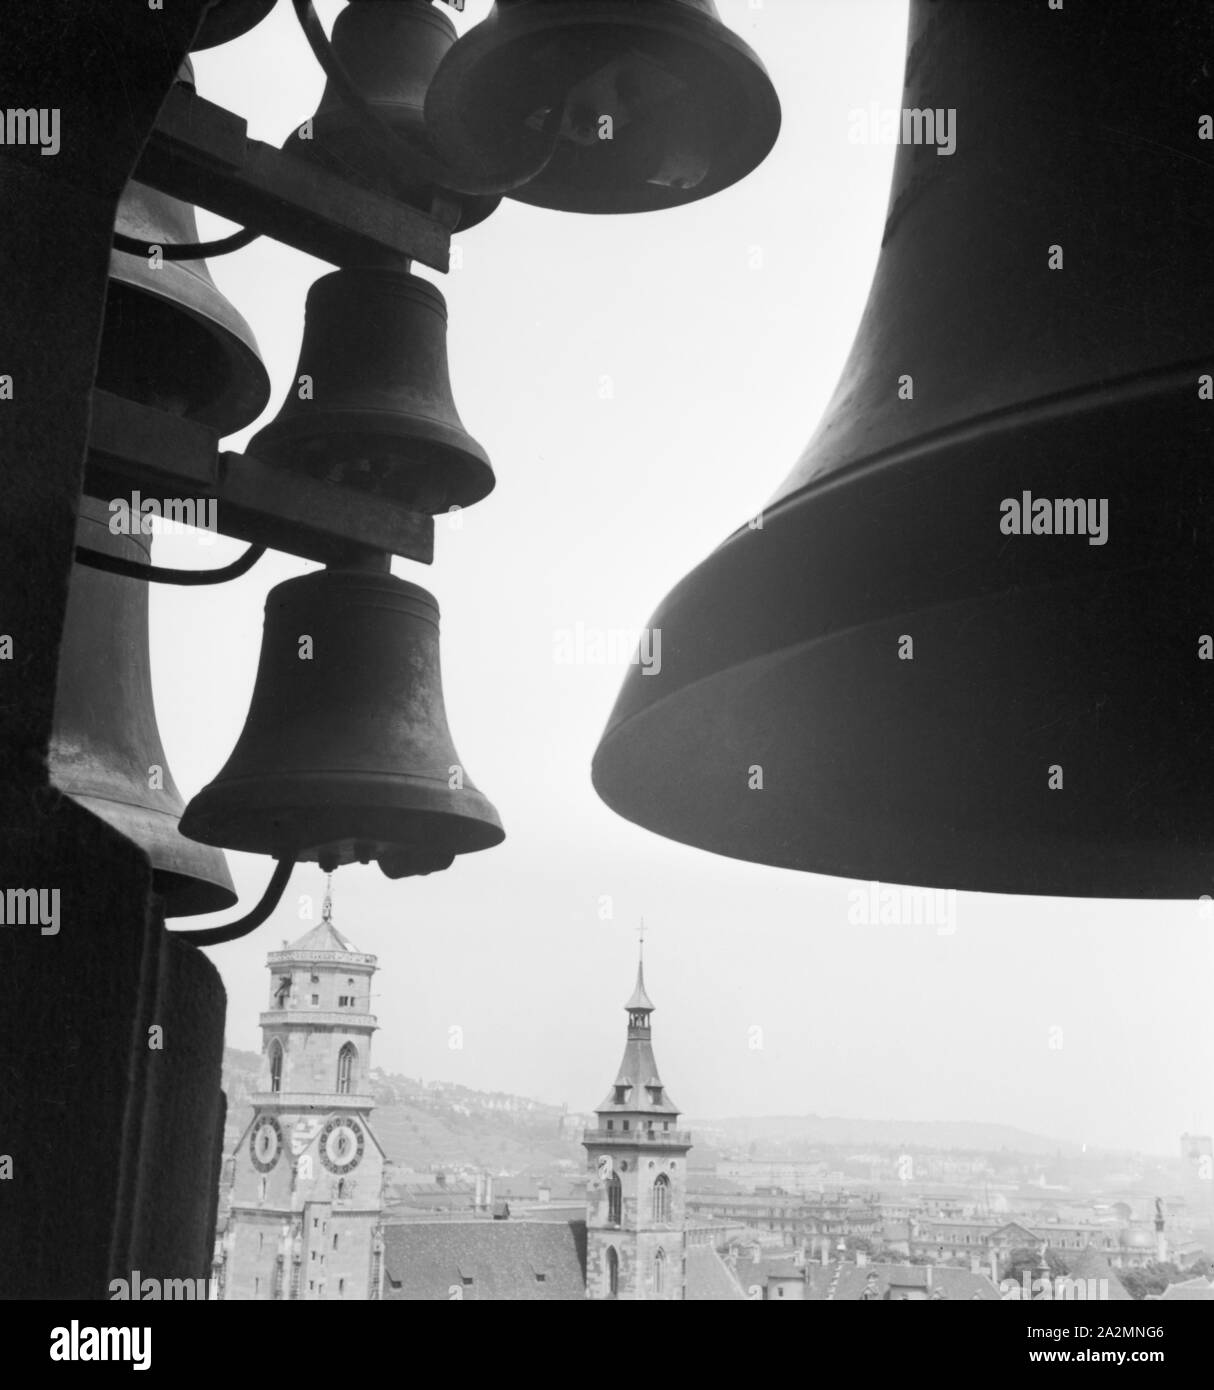 Glocken mit Blick auf die Stadt Baden Baden, Deutschland 1930er Jahre. Campane con vista a la città di Baden Baden, Germania 1930s. Foto Stock